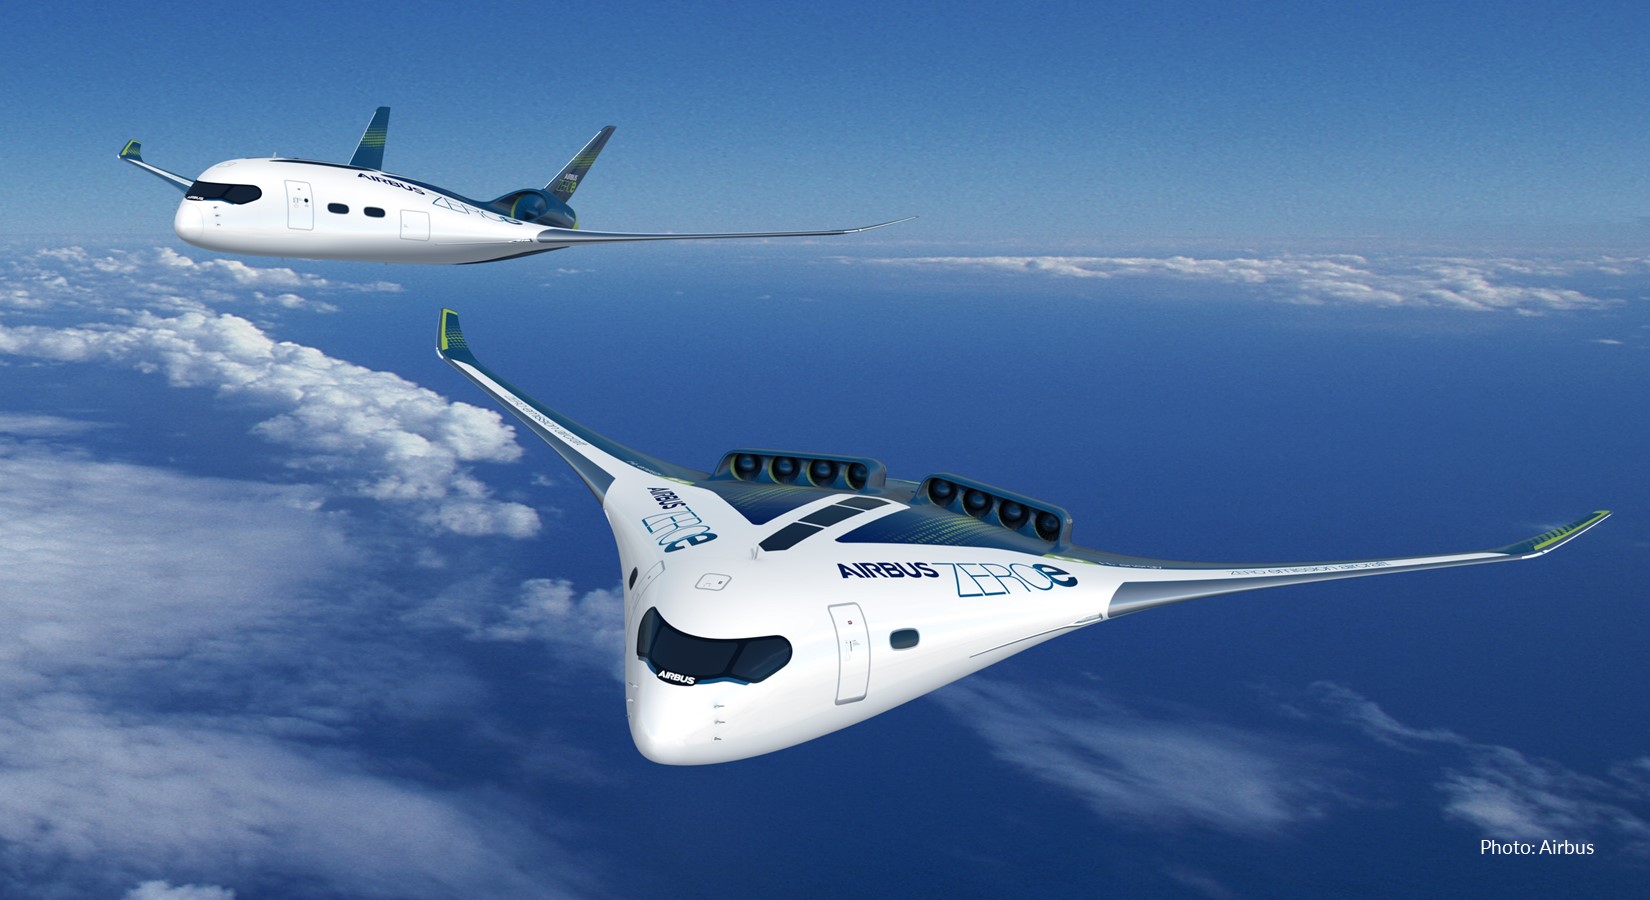 airbus zero emission plane concept